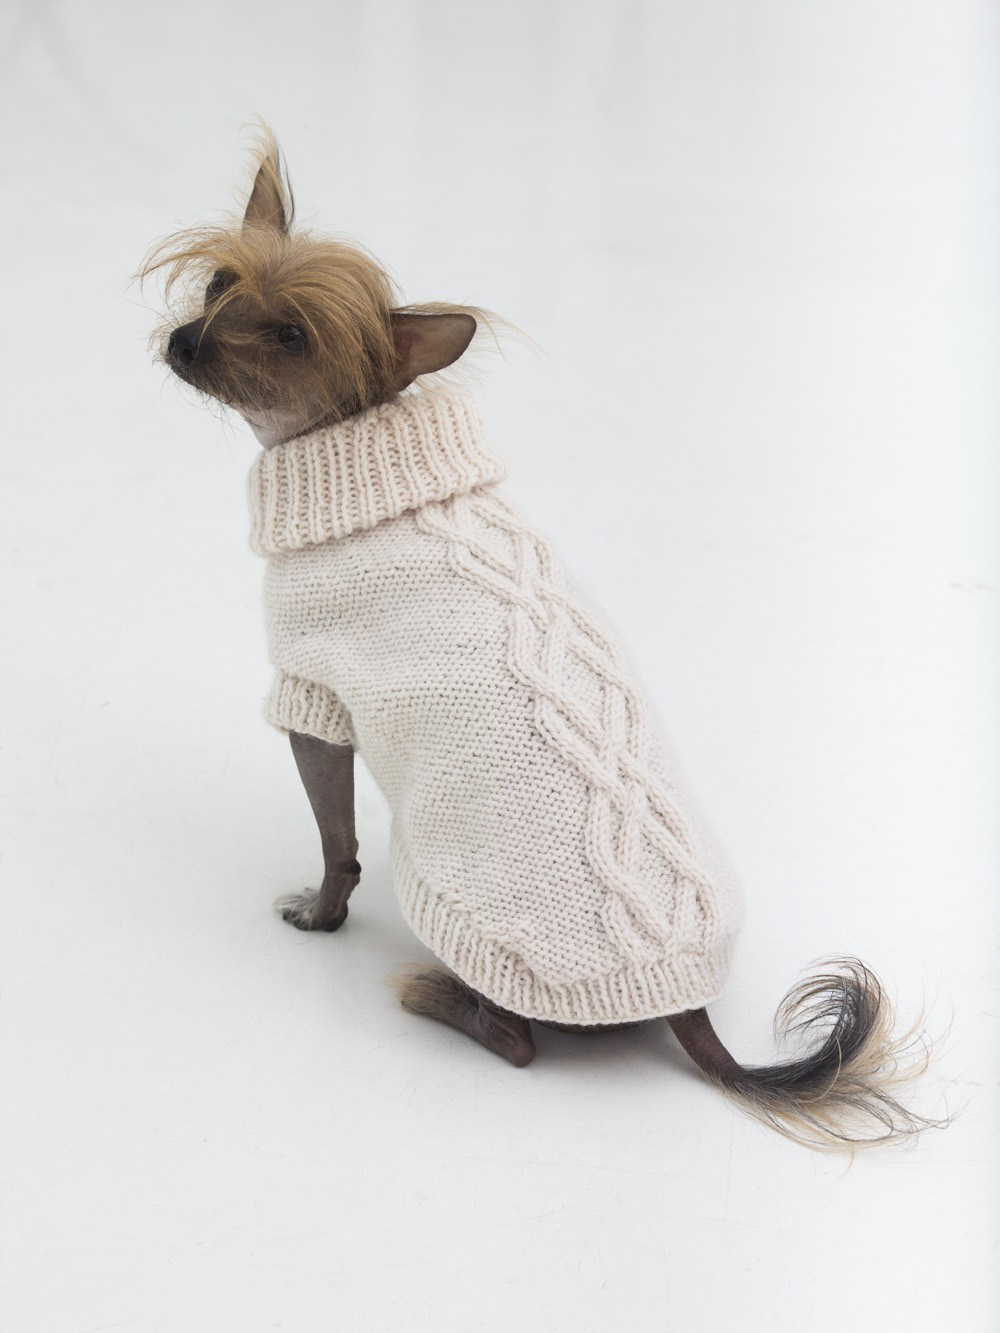 Dog Sweater Knitting Pattern 10 Stunning Examples Of Beautiful Fall Dog Sweaters Free Knitting